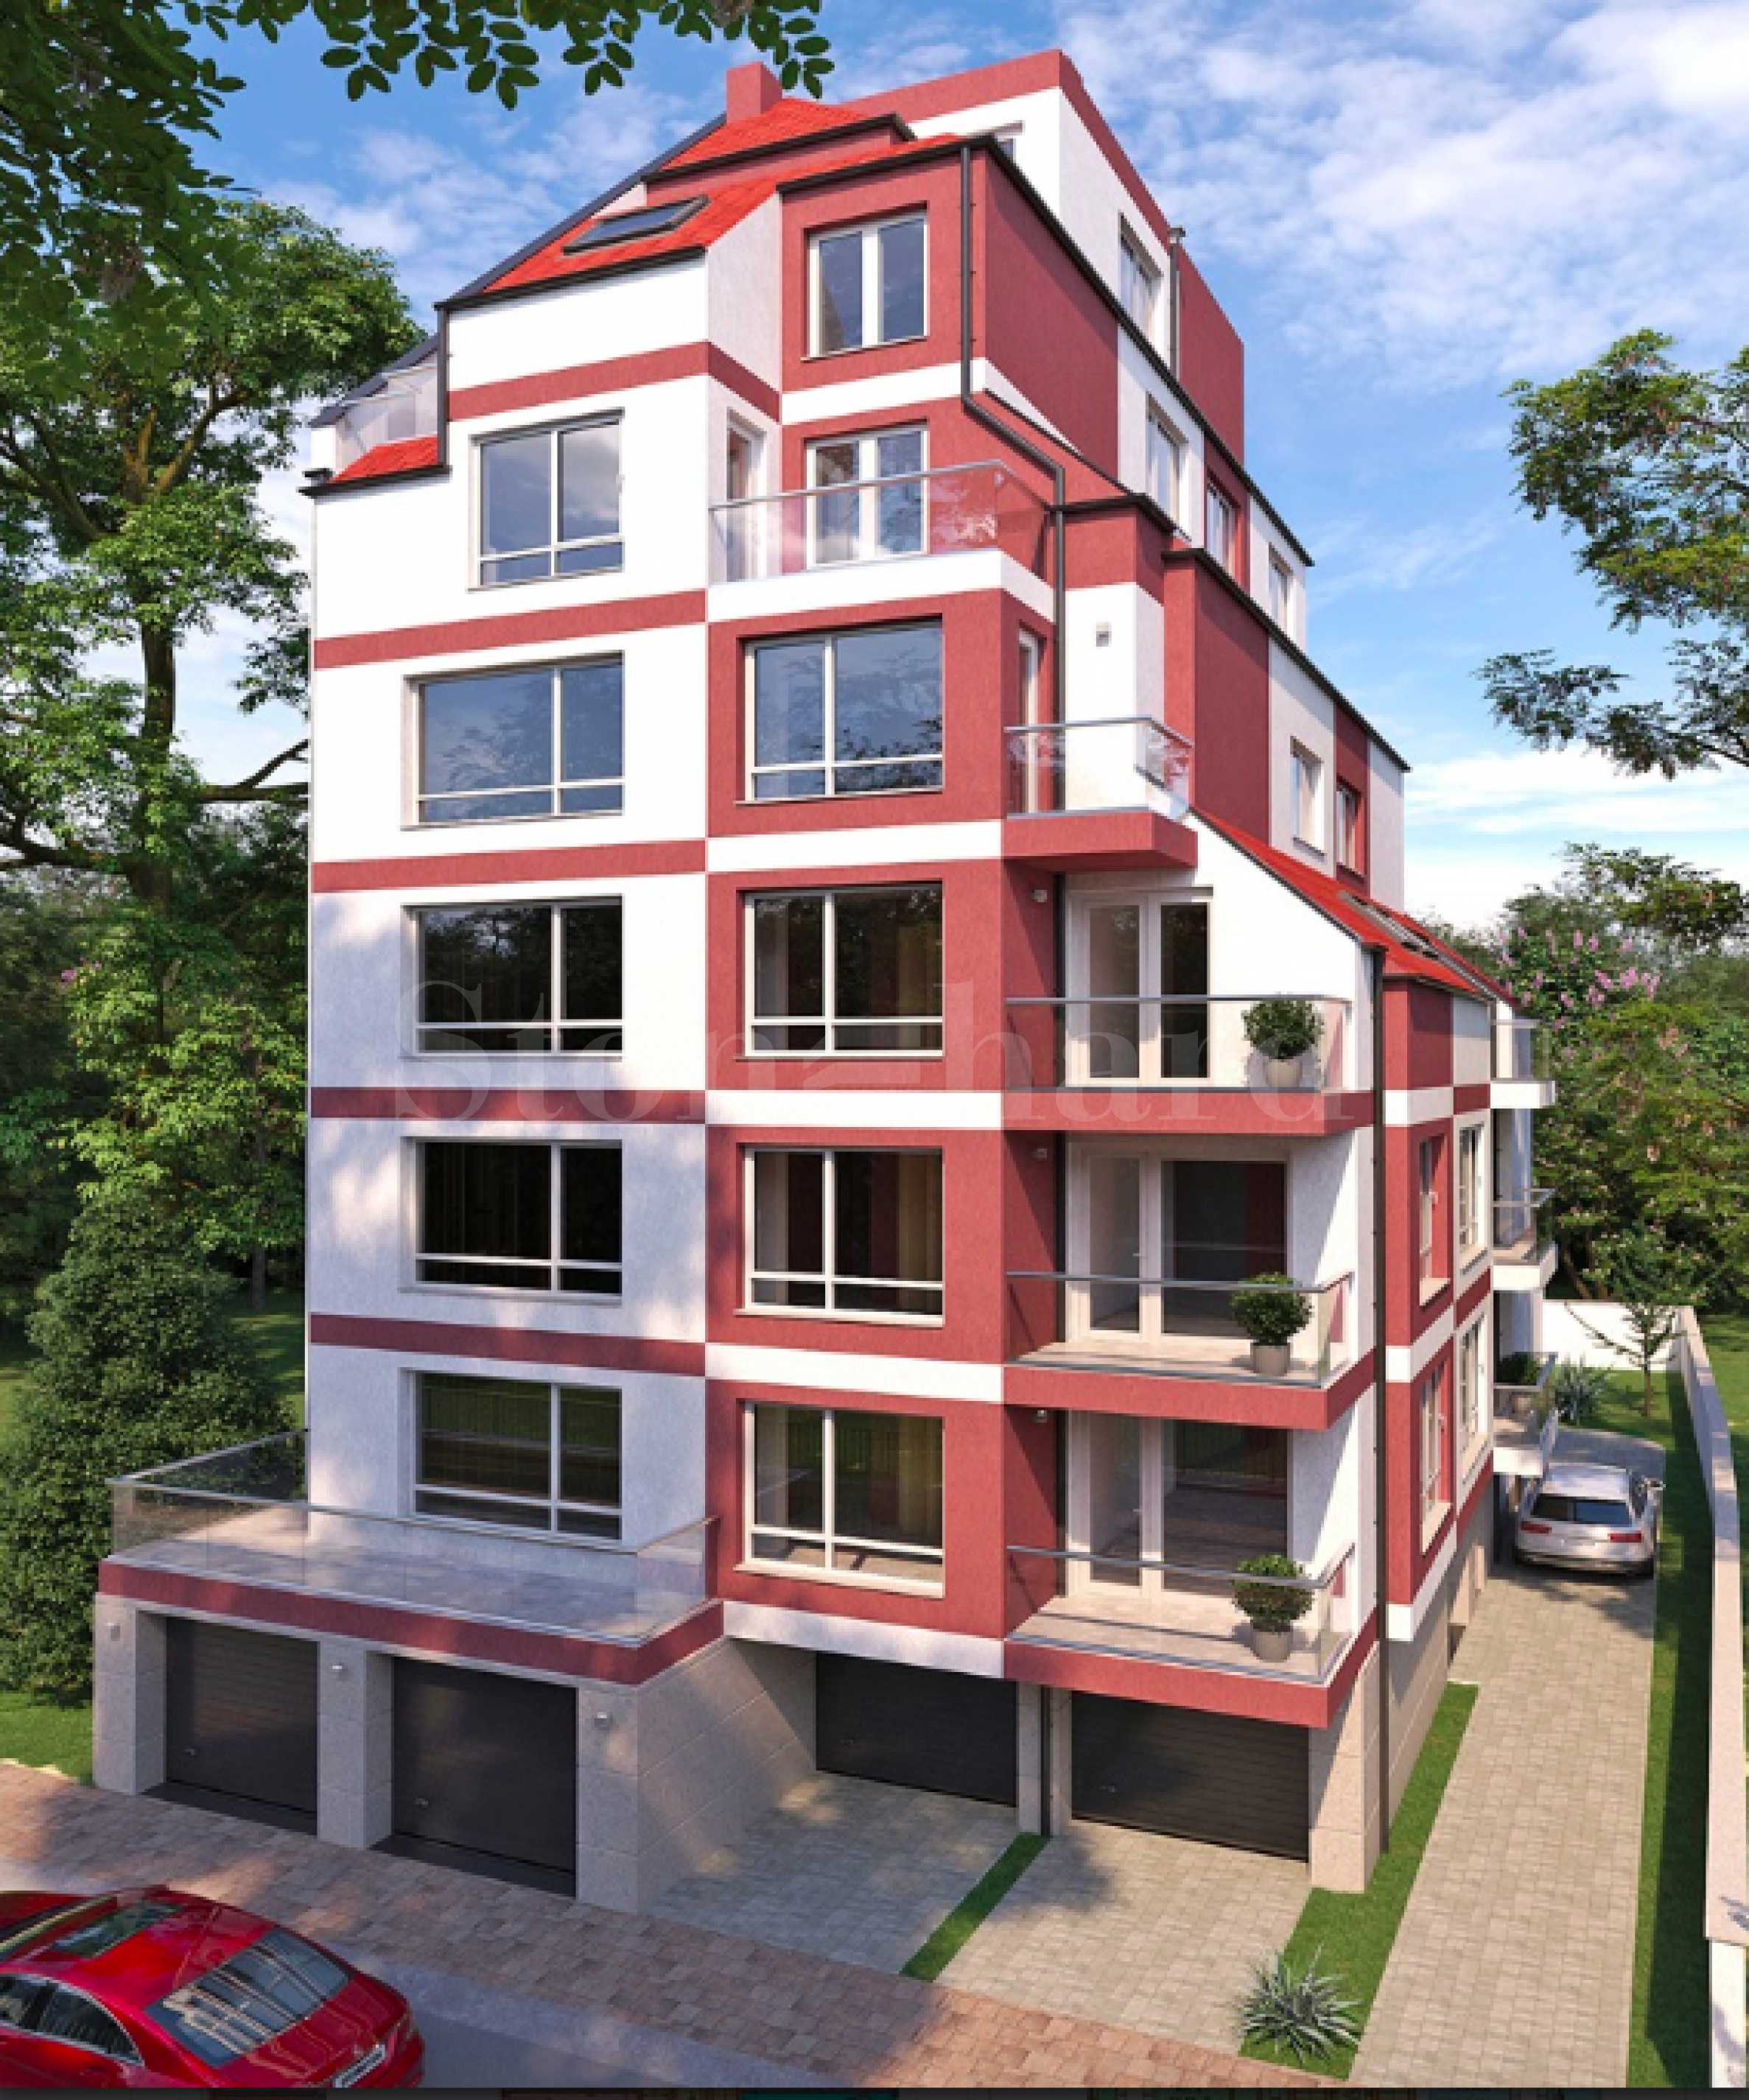 Лимитиран брой апартаменти в нова модерна сграда в центъра на София2 - Stonehard